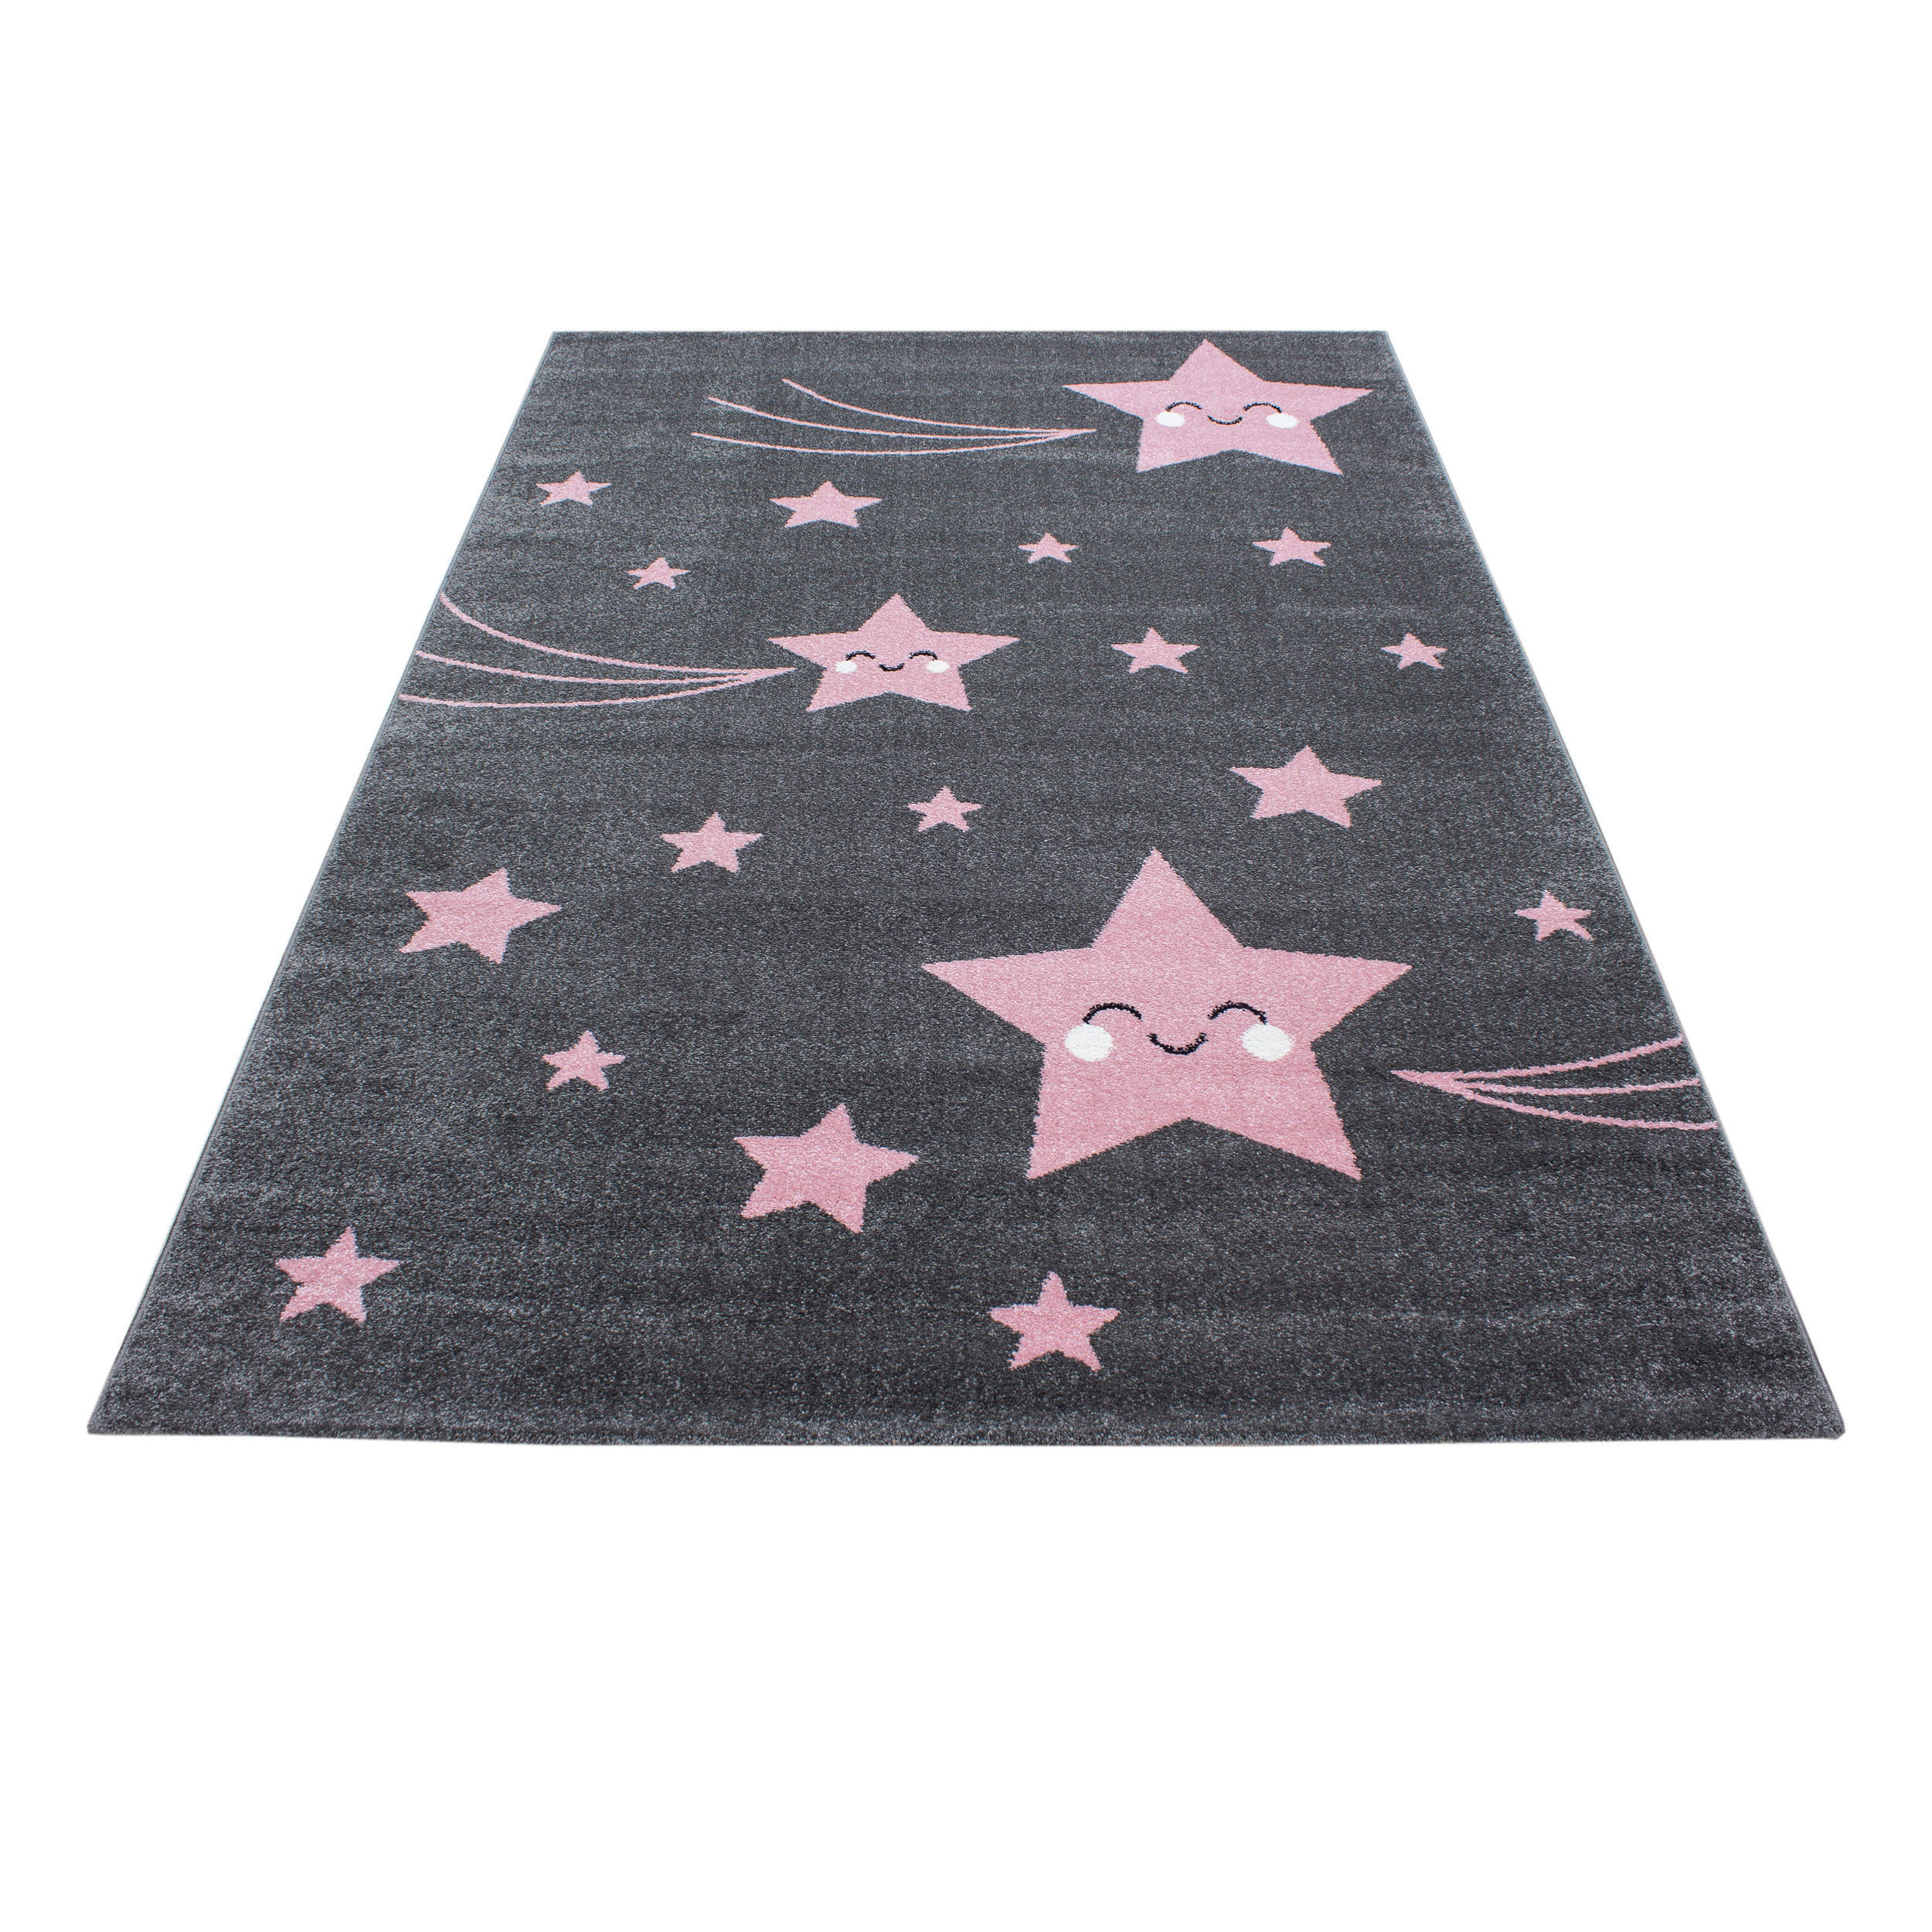 Ben′n′jen DĚTSKÝ KOBEREC, 80/150 cm, šedá, pink - šedá, pink - textil